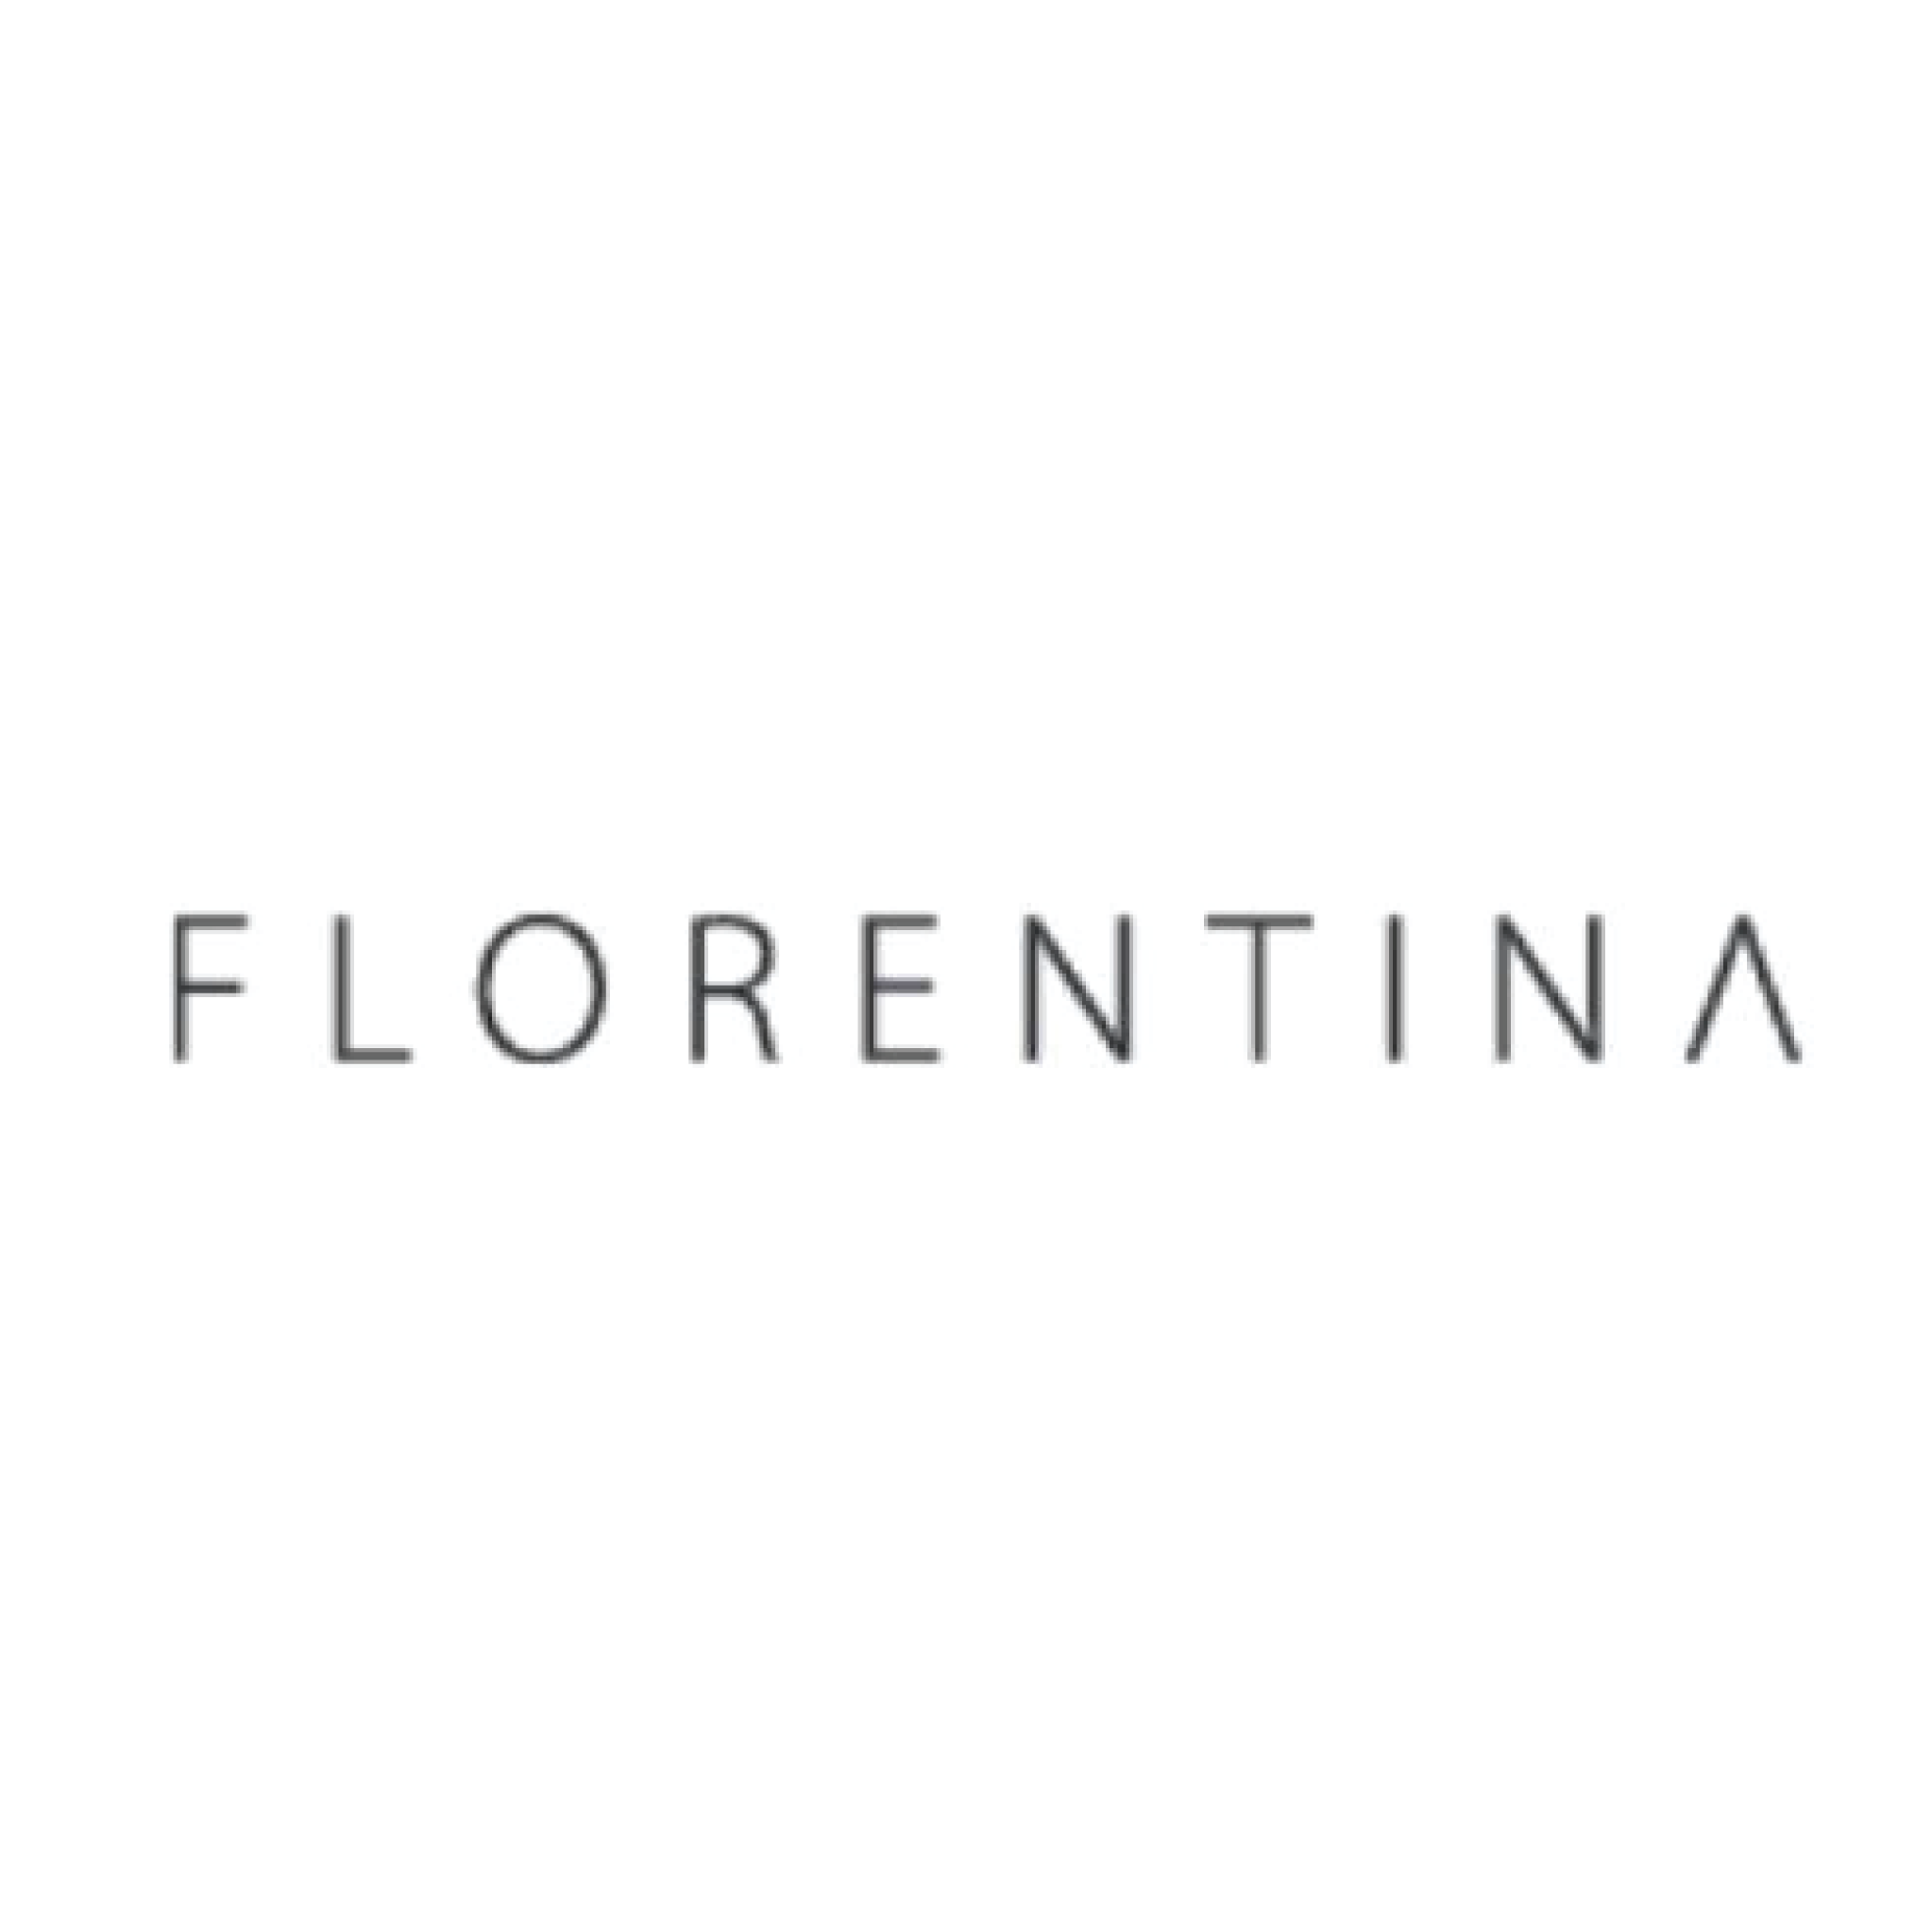 florentina-01.png